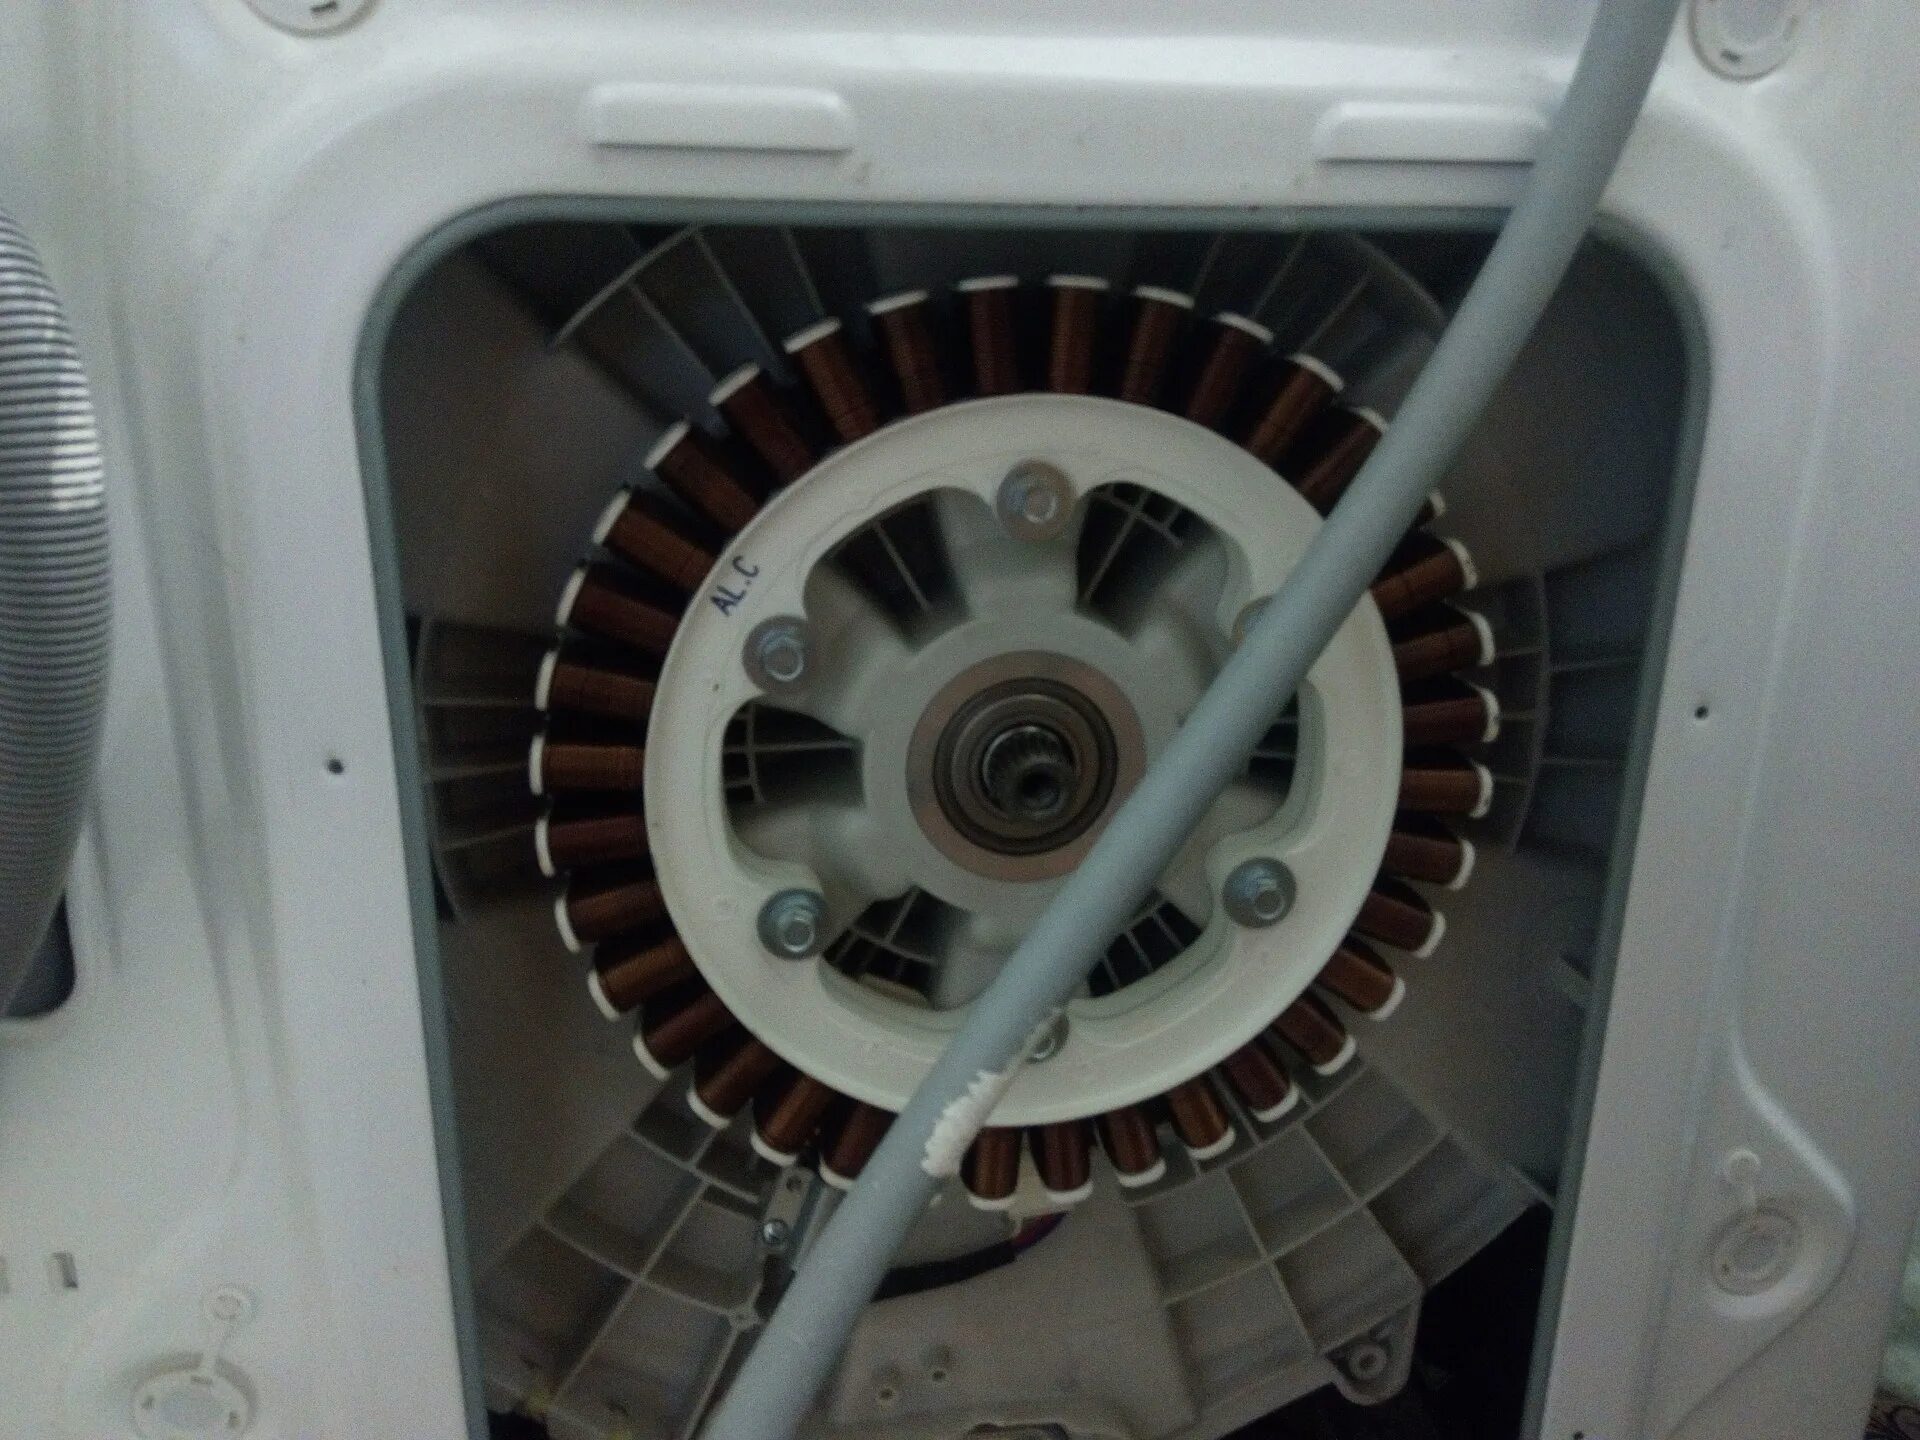 Таходатчик стиральной машины LG. Стиральная машина LG WD 101 92 C 3 5 кг показать таходатчик. Машинка LG без таходатчика. Ремонт таходатчика в стиральной машине LG.